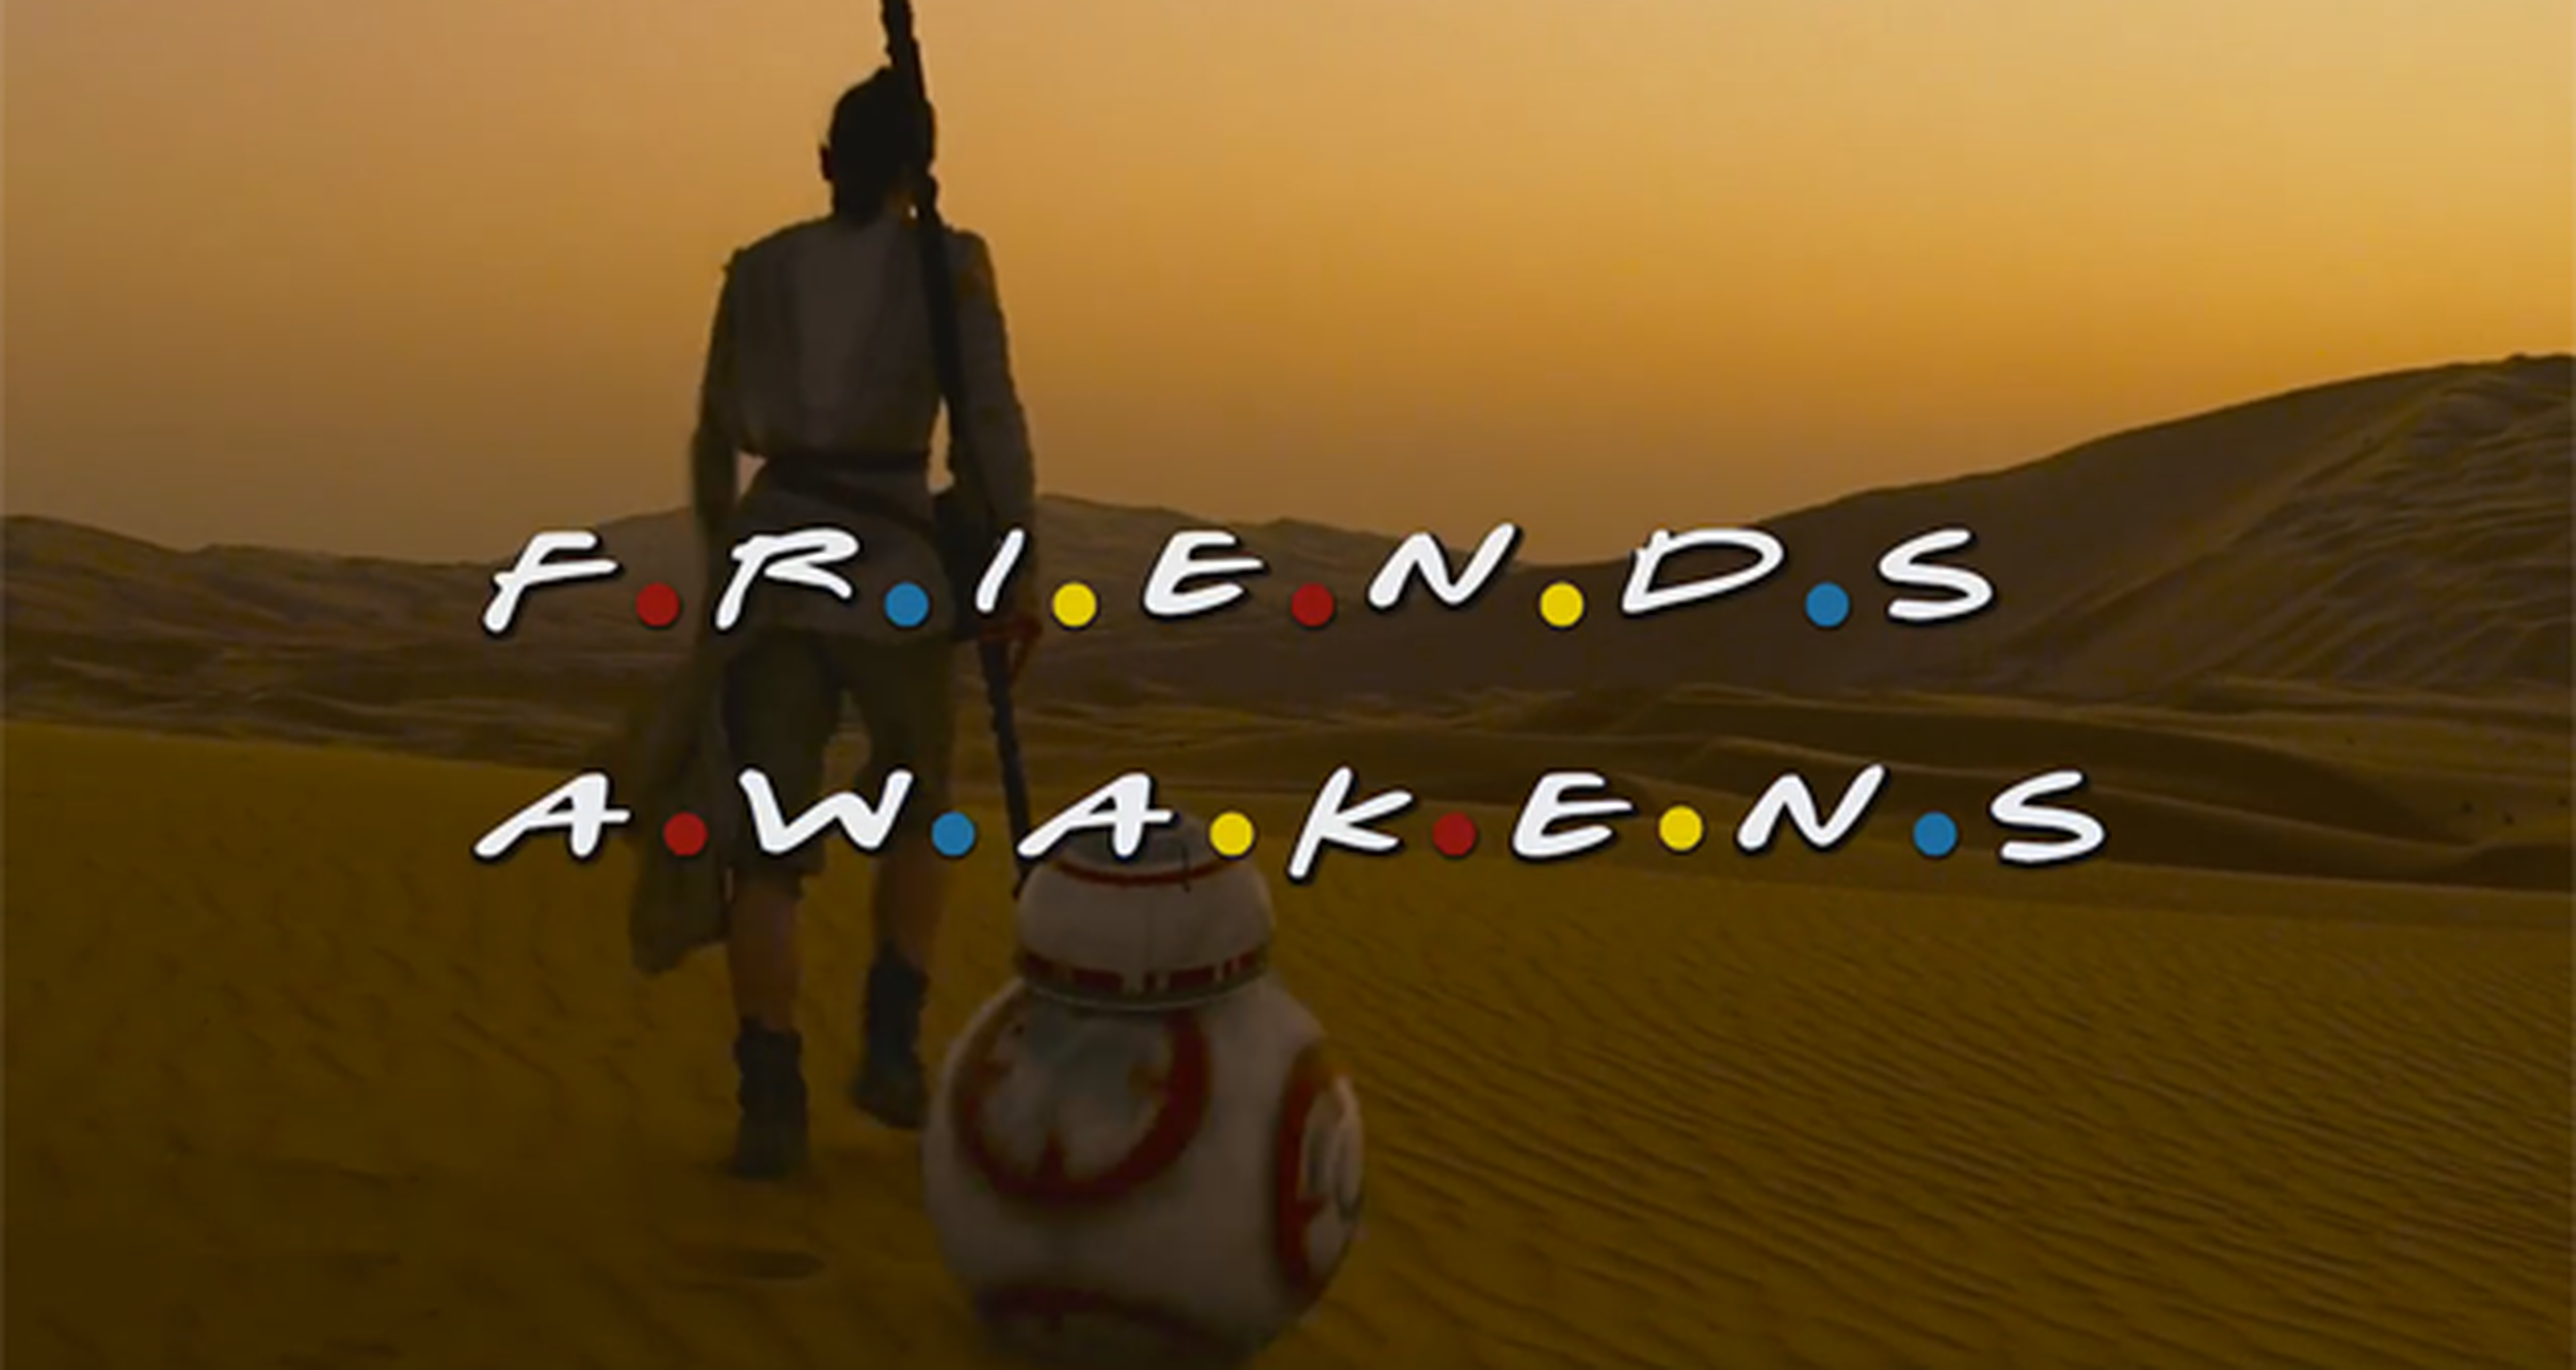 Star Wars: El Despertar de la Fuerza - Parodia con Friends